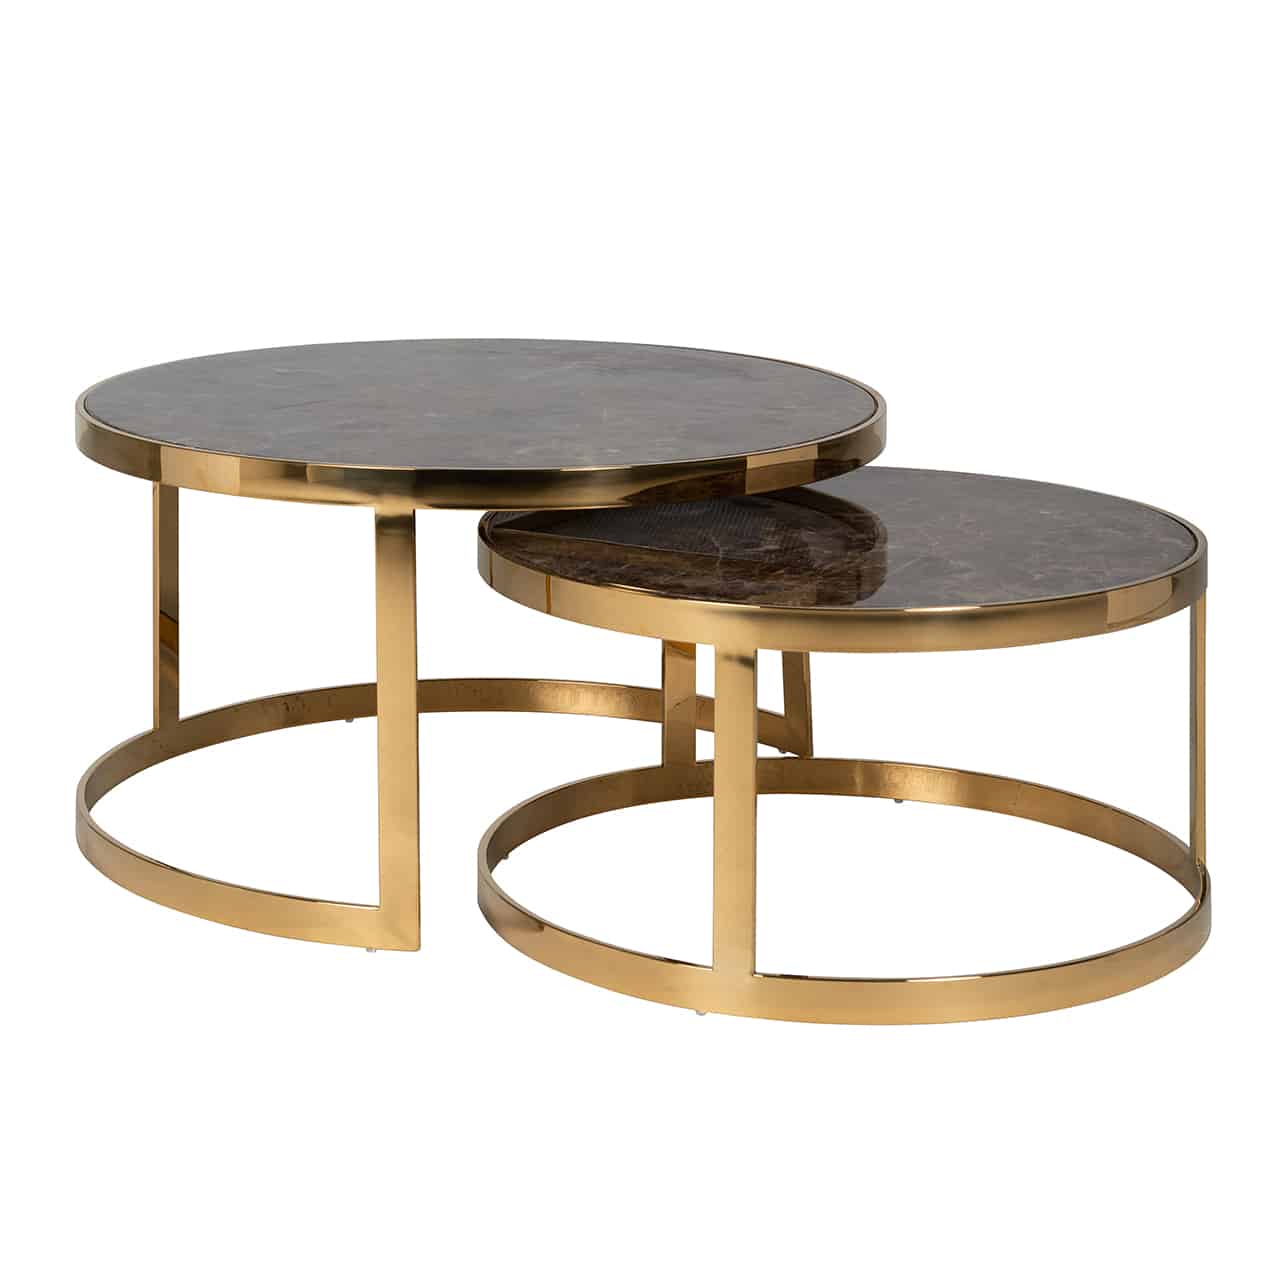 Couchtisch 2er Set; zwei verschieden hohe runde Tische, die zum Teil ineinandergeschoben sind; das Gestell ist jeweils aus breiten, goldenen Metallstreben gefertigt, mit einer glänzenden braun marmorierten Tischplatte.